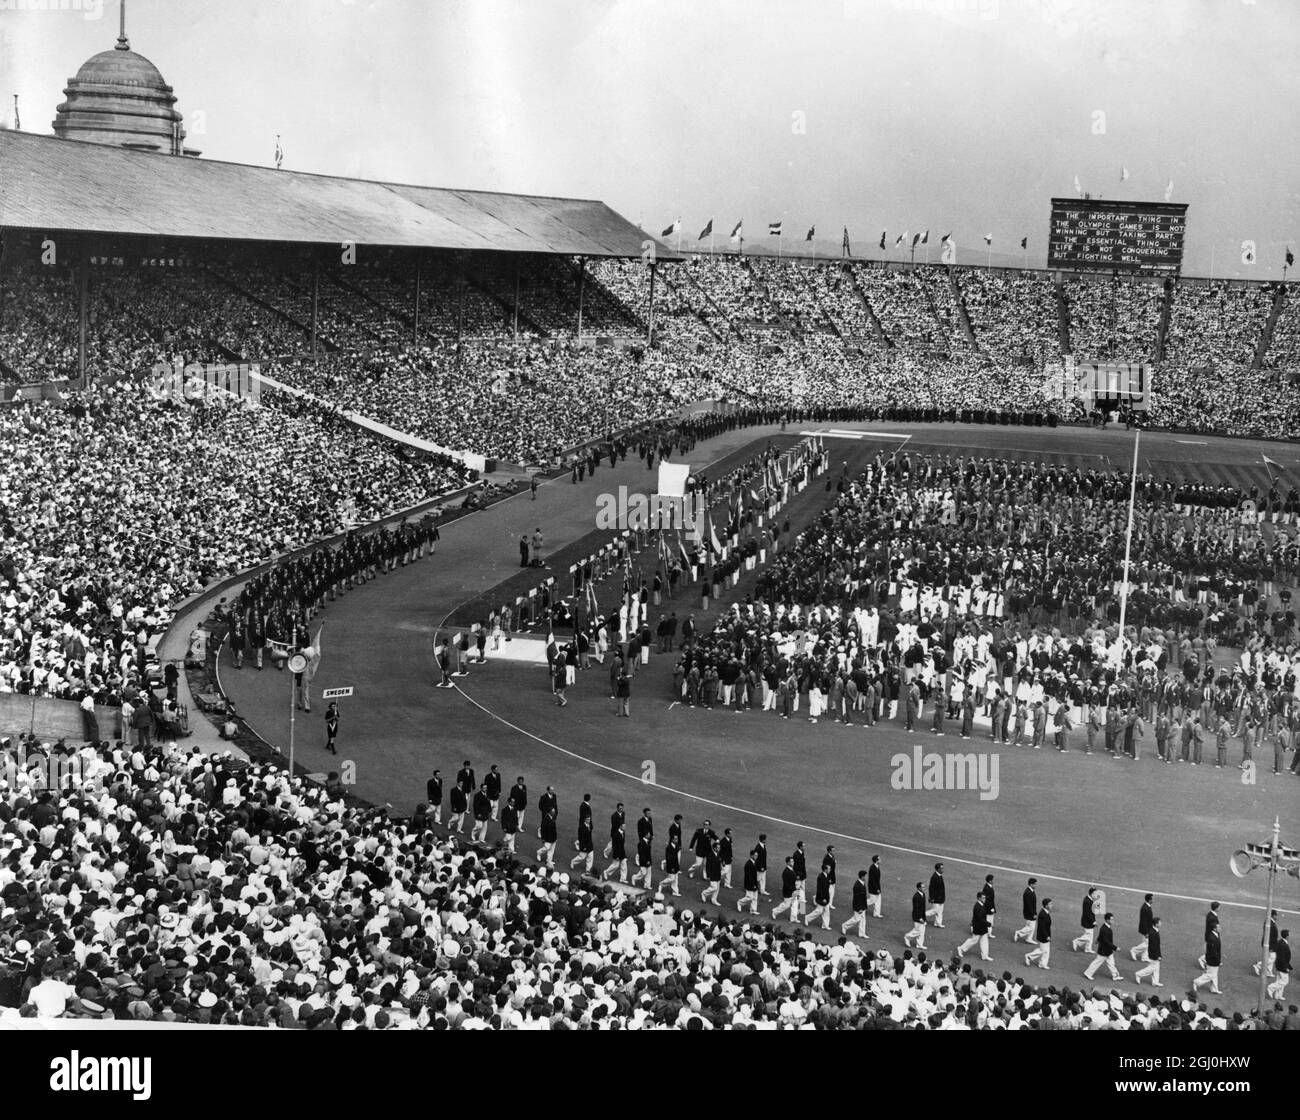 Se abre la XIV Olimpiada. Vista general del estadio de Wembley. Con miembros del equipo olímpico sueco marchando antes de la apertura oficial de los Juegos el 29 de julio de 1948 Foto de stock